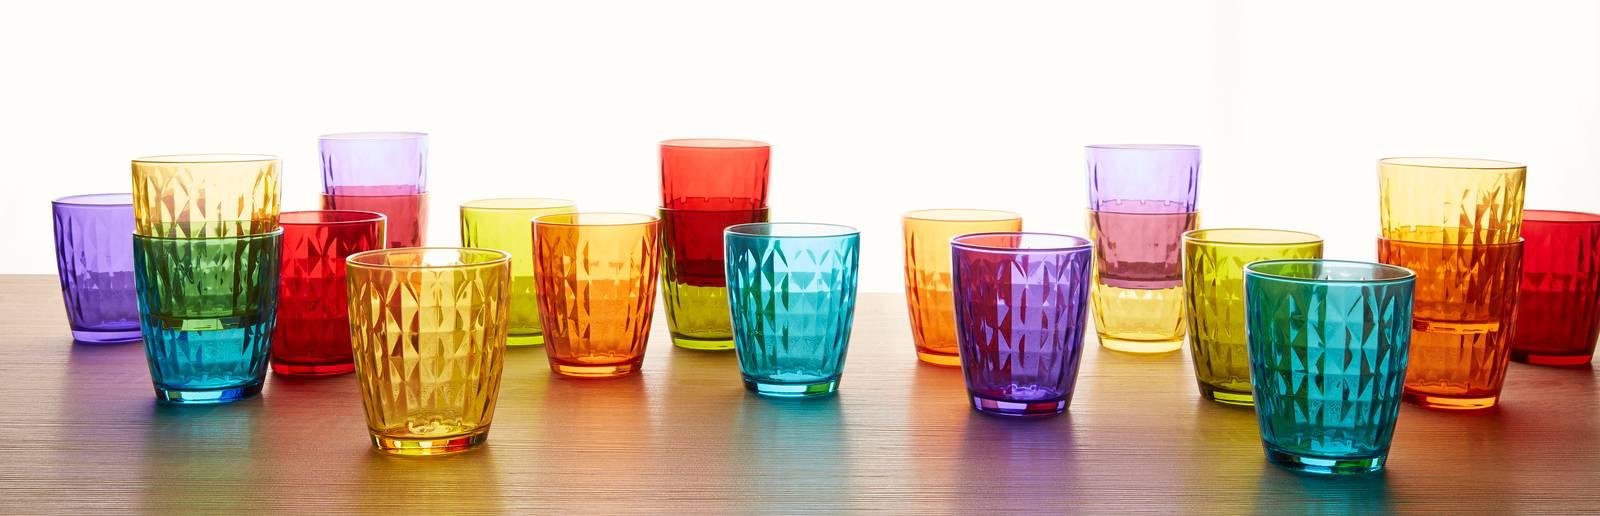 Bicchieri colorati per la tavola - Cose di Casa